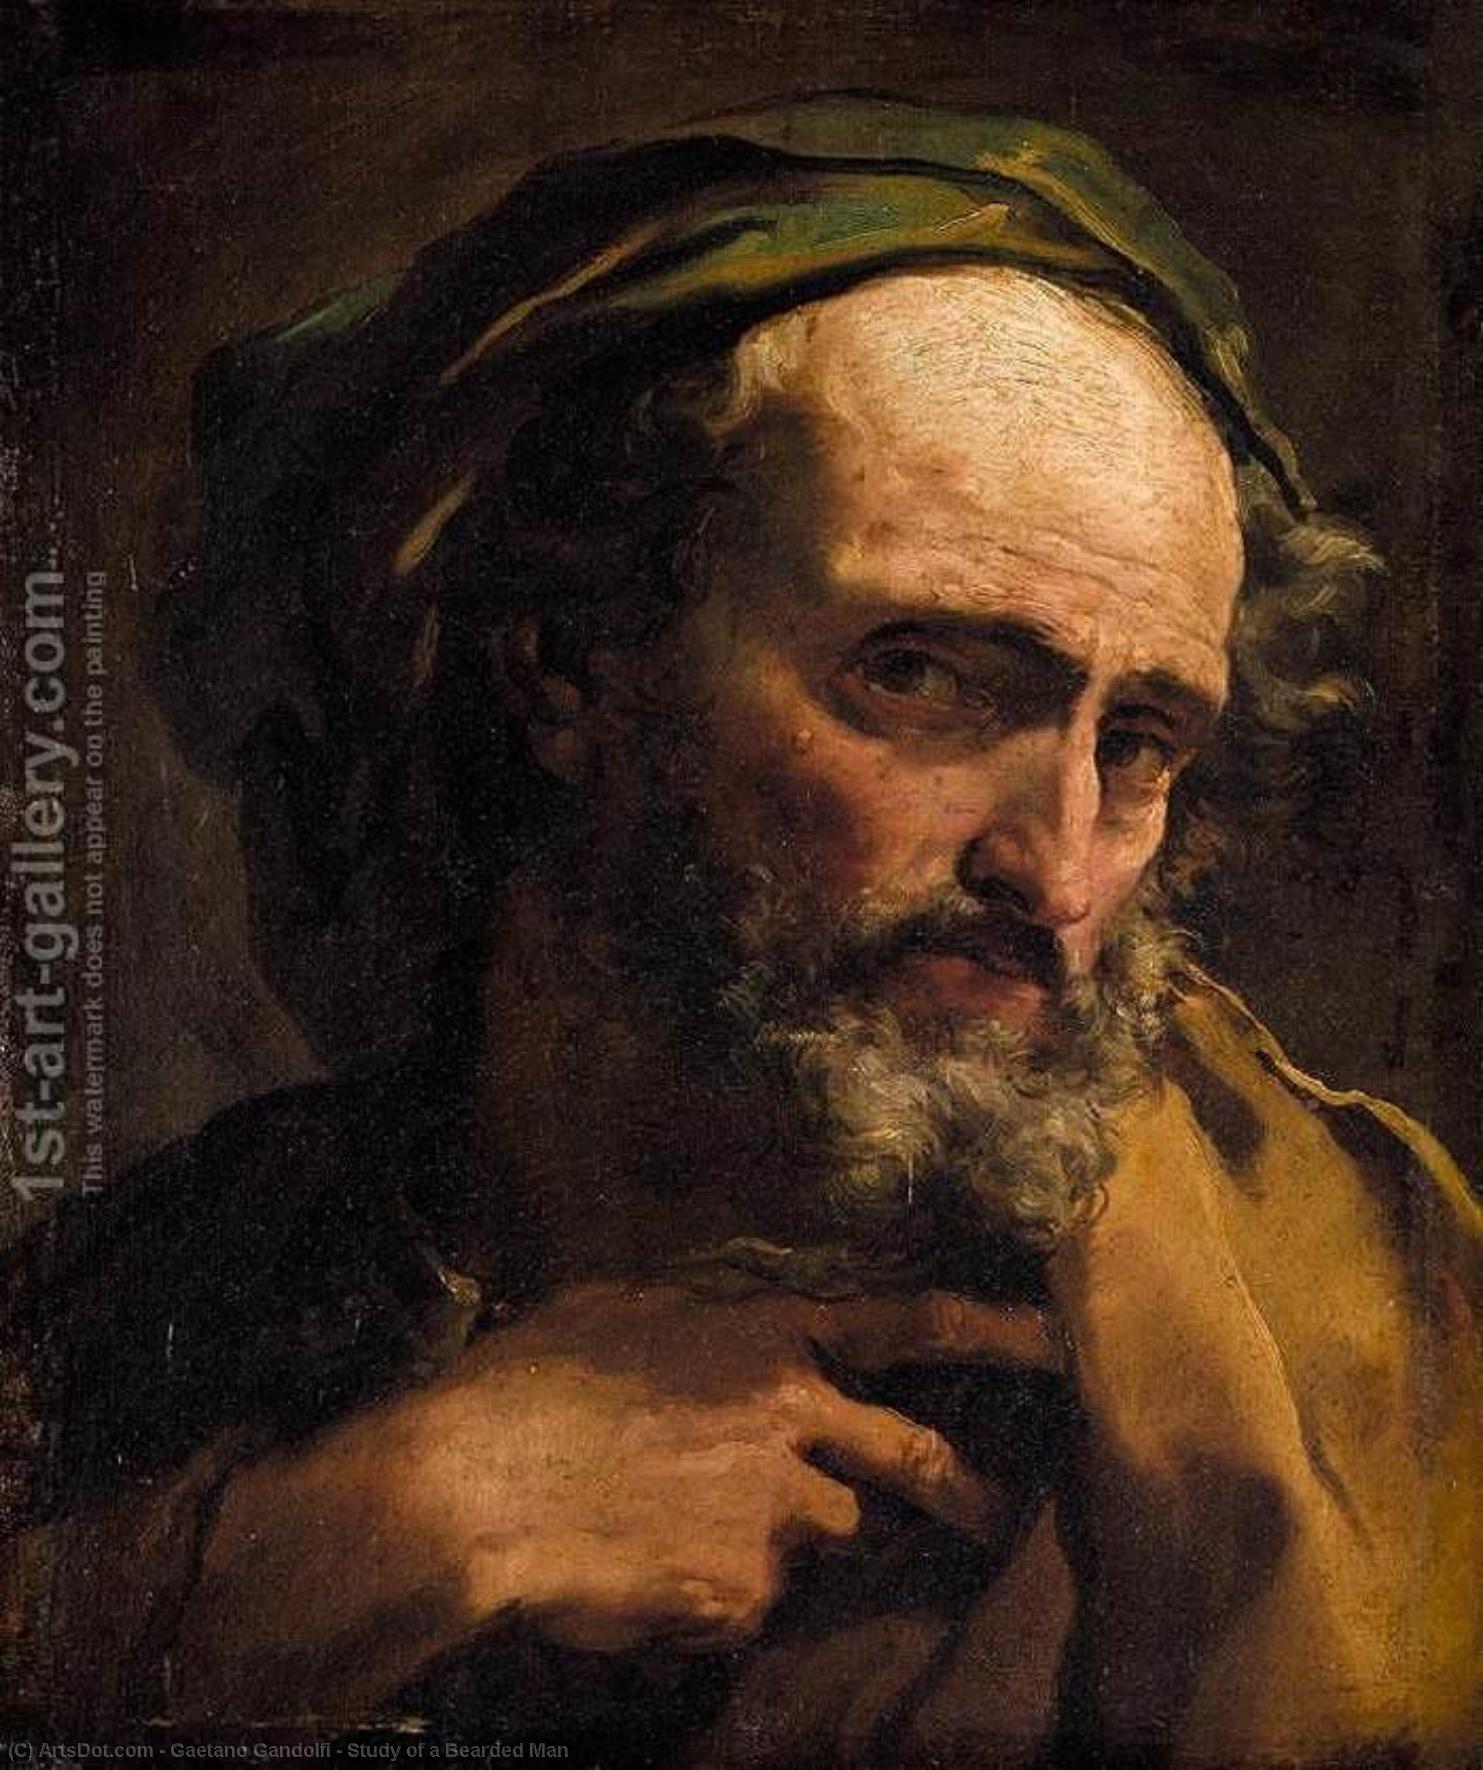 WikiOO.org - Enciclopedia of Fine Arts - Pictura, lucrări de artă Gaetano Gandolfi - Study of a Bearded Man